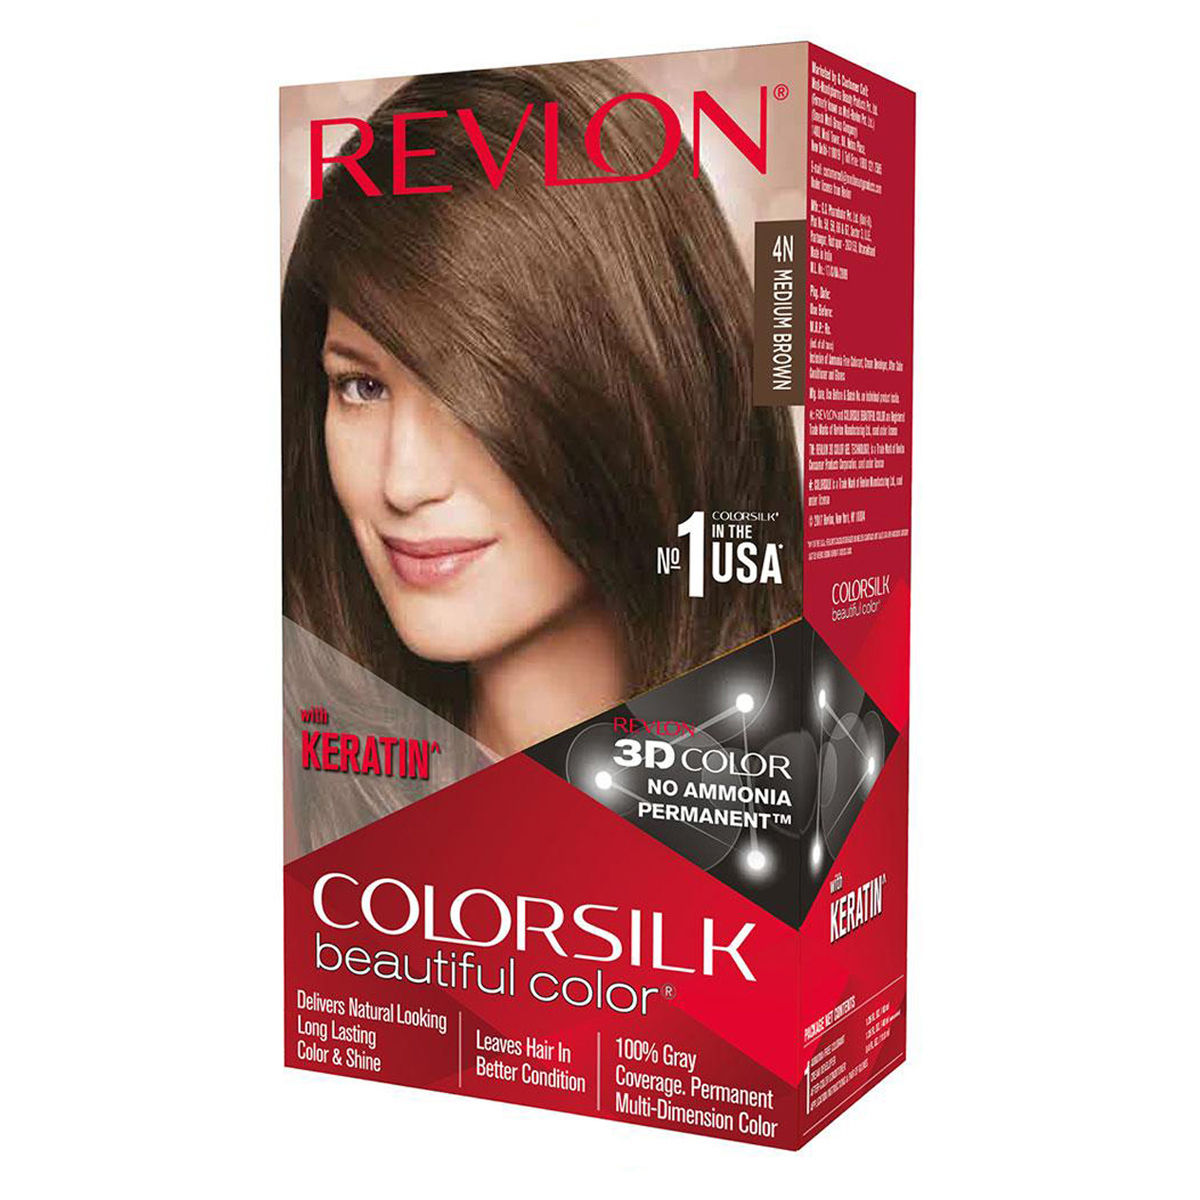 Buy Revlon Colorsilk Hair Color, 4N Medium Brown, 1 Count Online